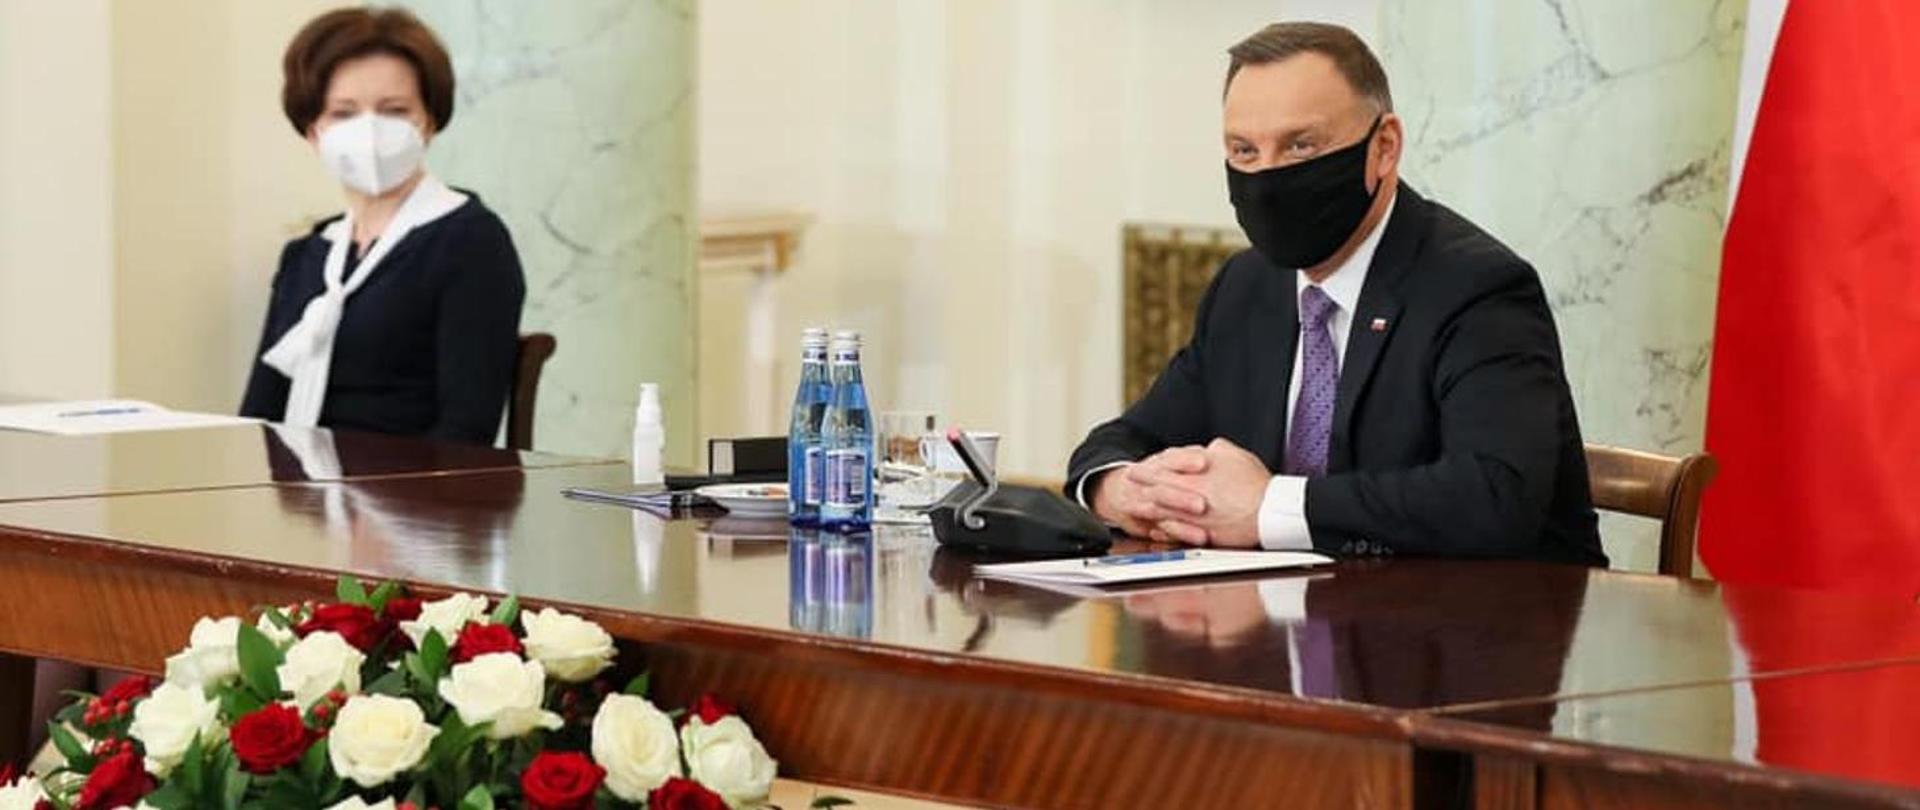 Prezydent Andrzej Duda i minister Marlena Maląg 